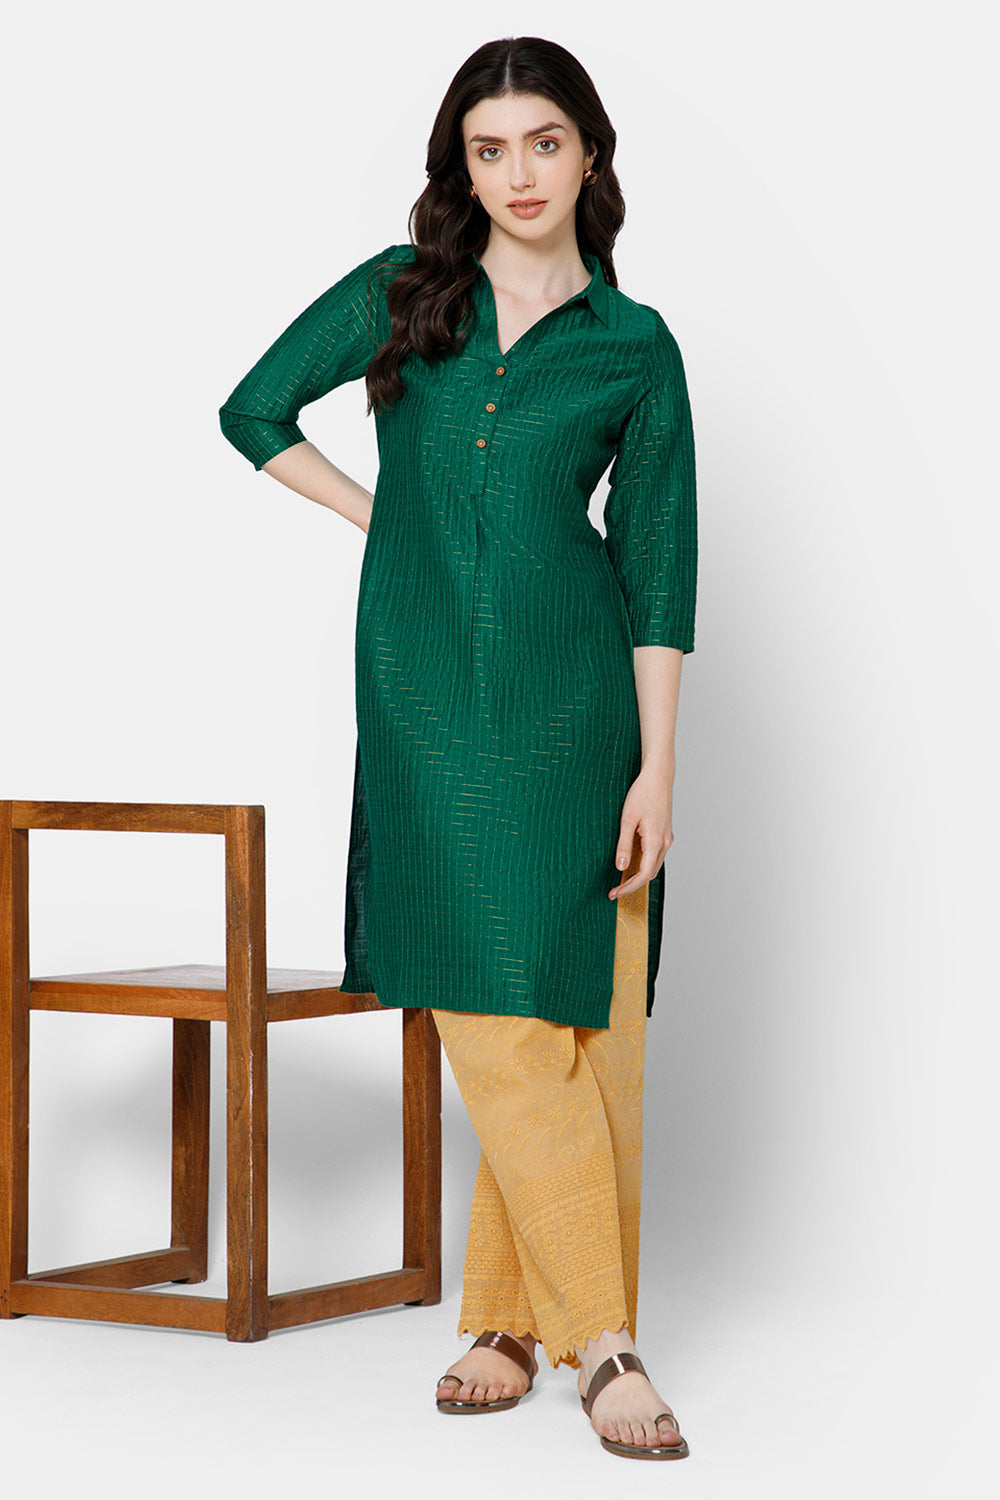 Mythri Women's Kurthi Anarkali Casual wear - Green - KU65